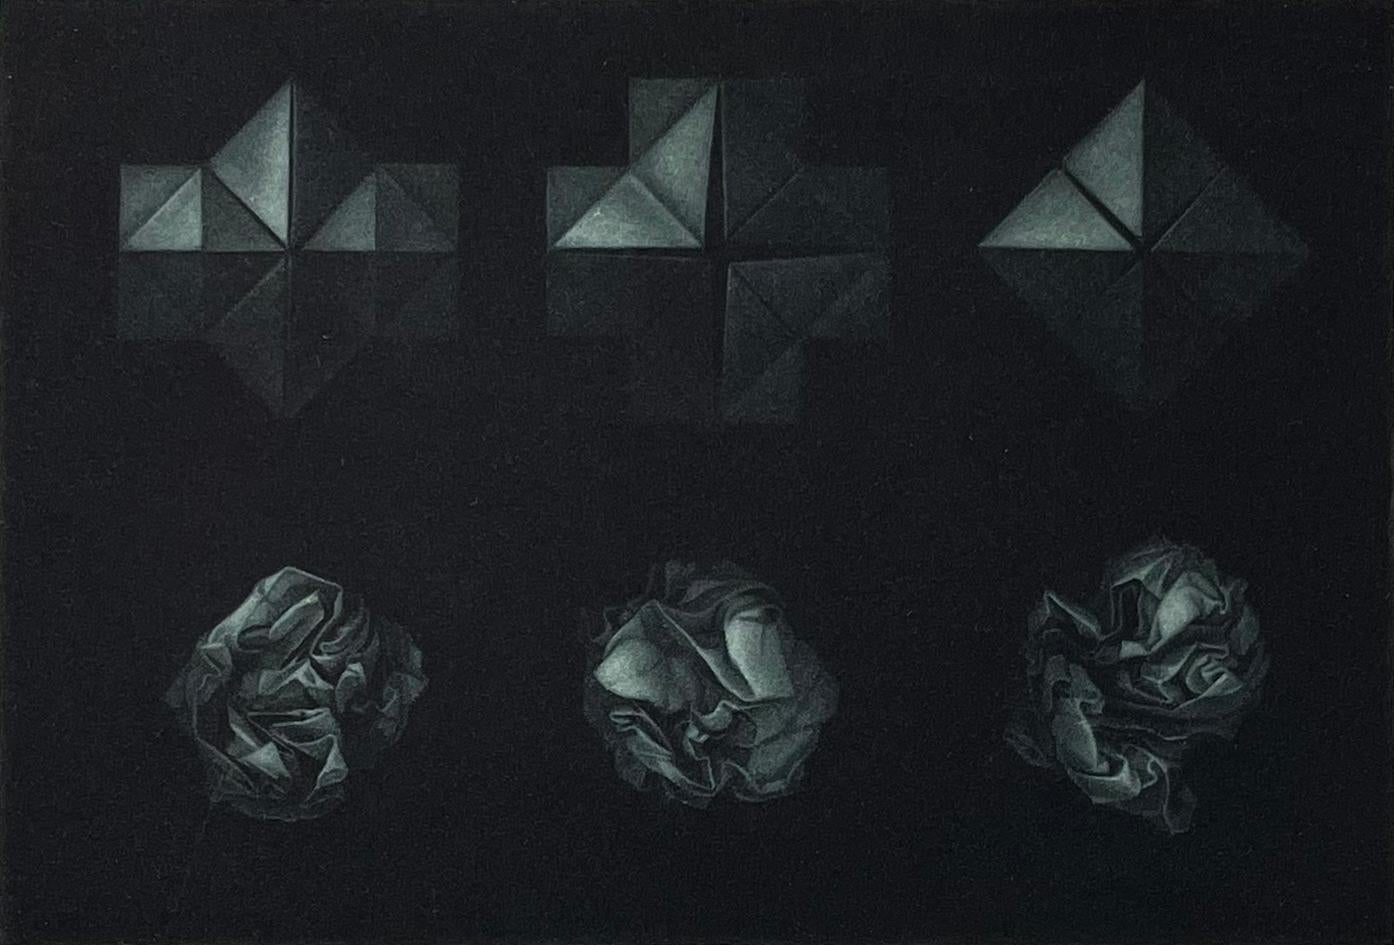 Les illusions et les reflets dans les gravures de Sietins font souvent penser à M.C. Escher à l'esprit, mais ses gravures ont une sensation distinctive qui leur est propre. Il s'agit de l'une des plus petites gravures réalisées par Sietins, une